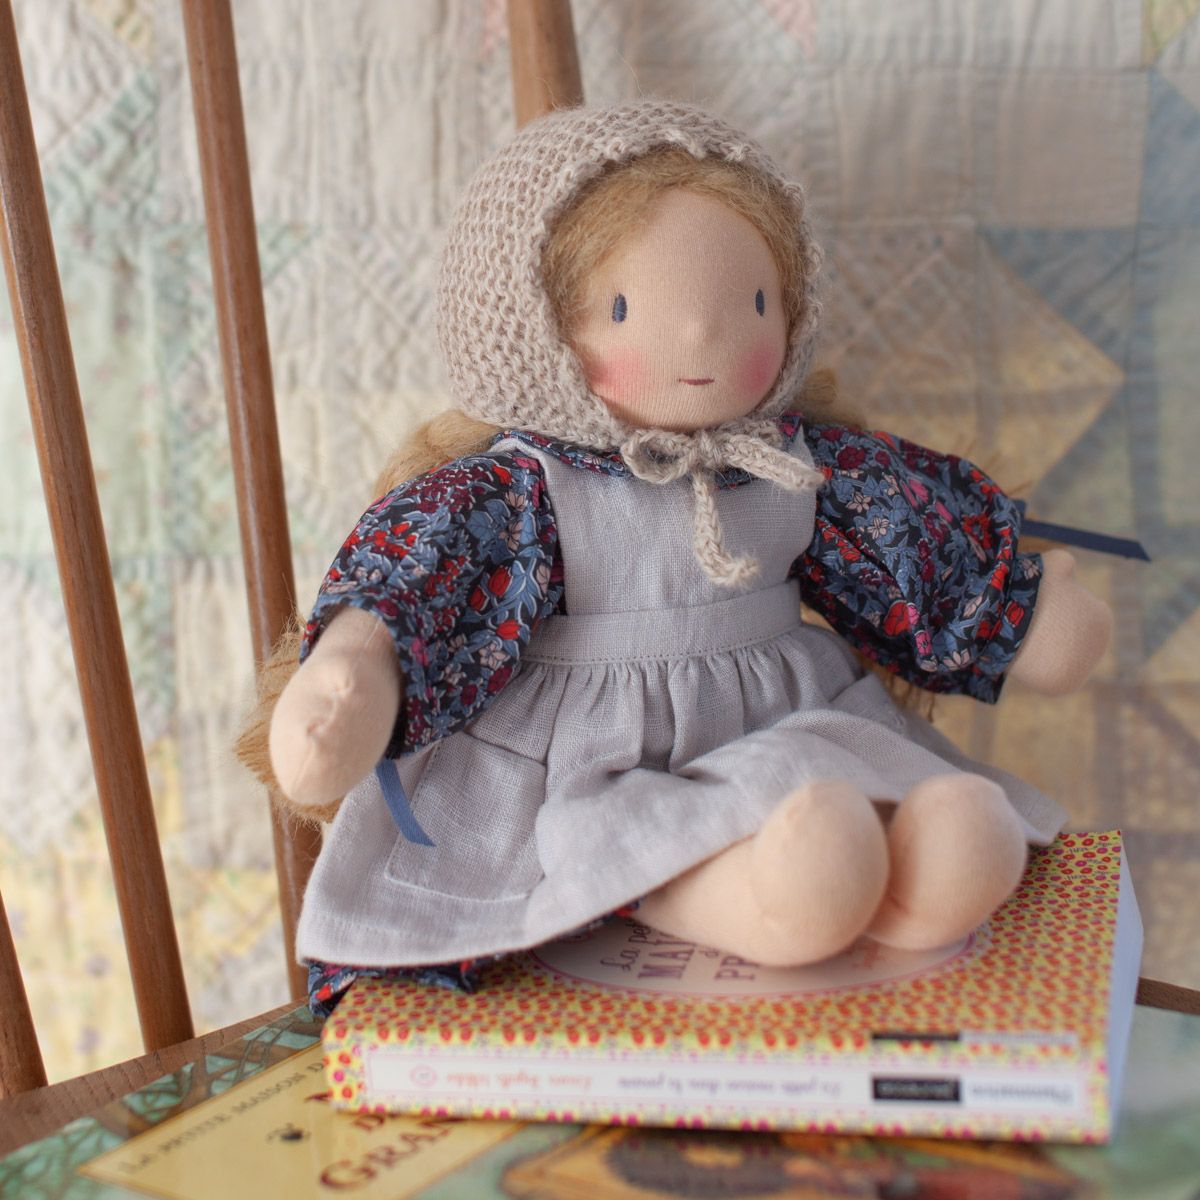 Petits habits de poupée - Béguin en tricot "la petite maison"